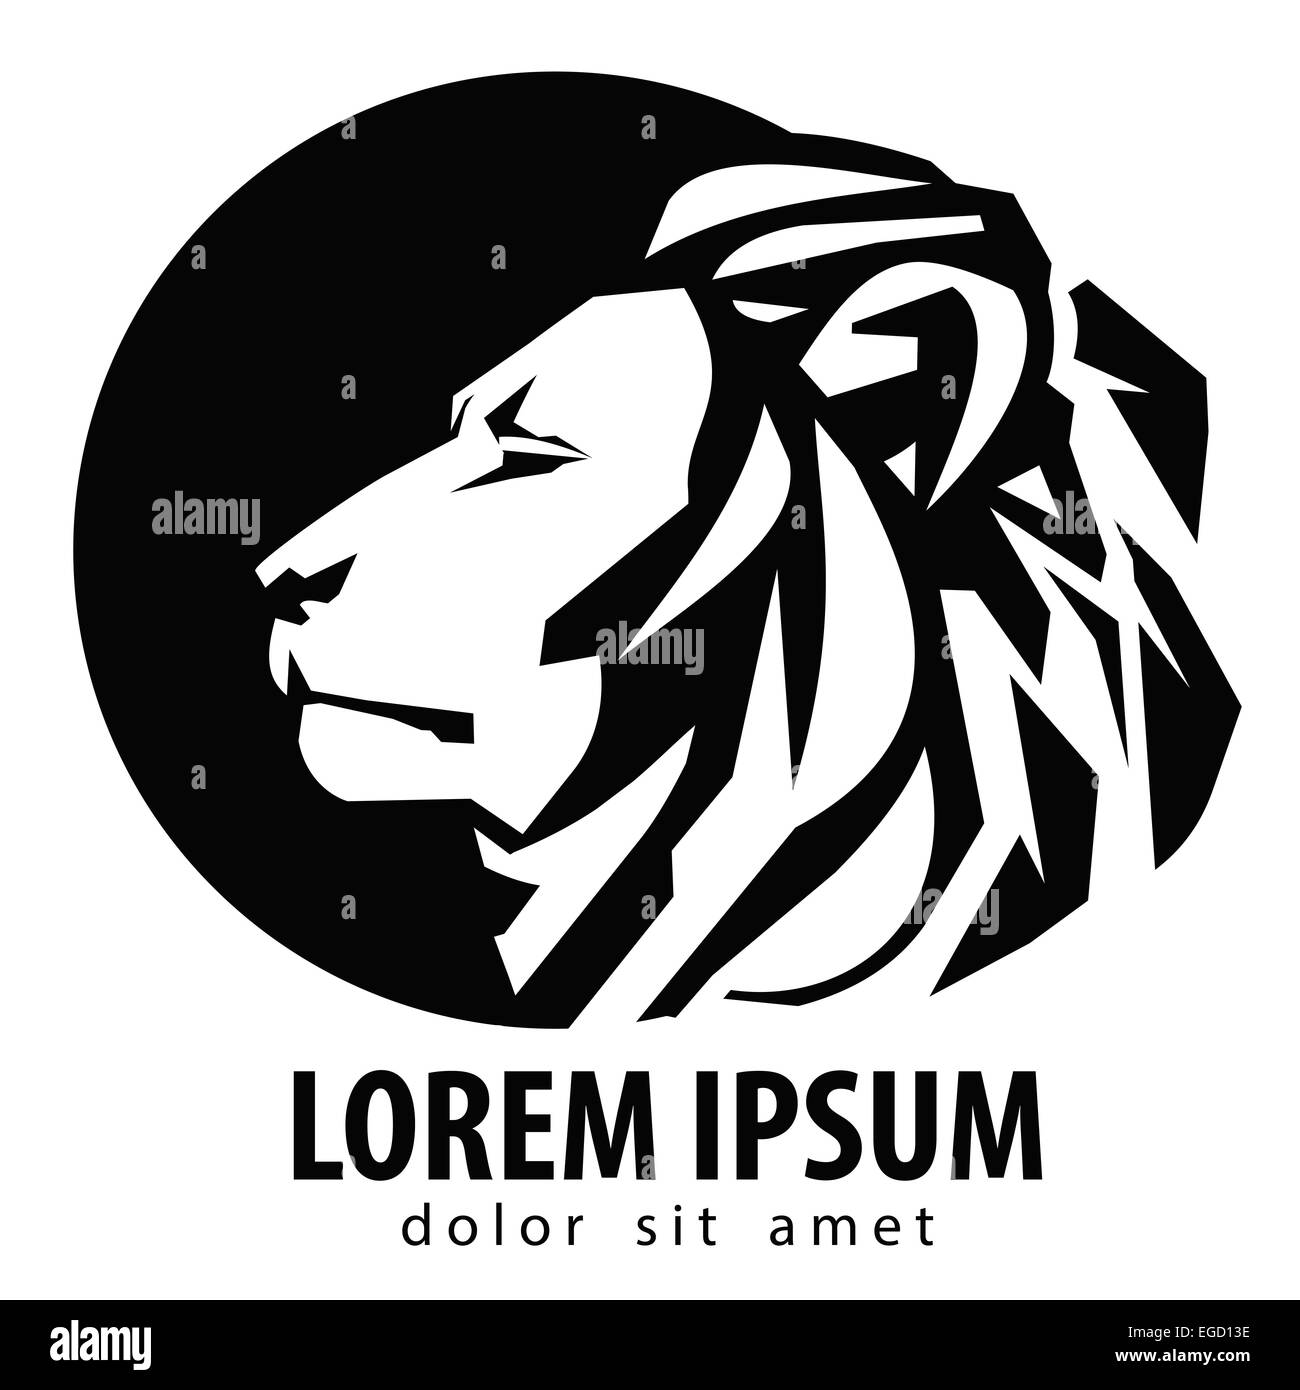 lion logo design template. wildlife or zoo icon. Stock Photo